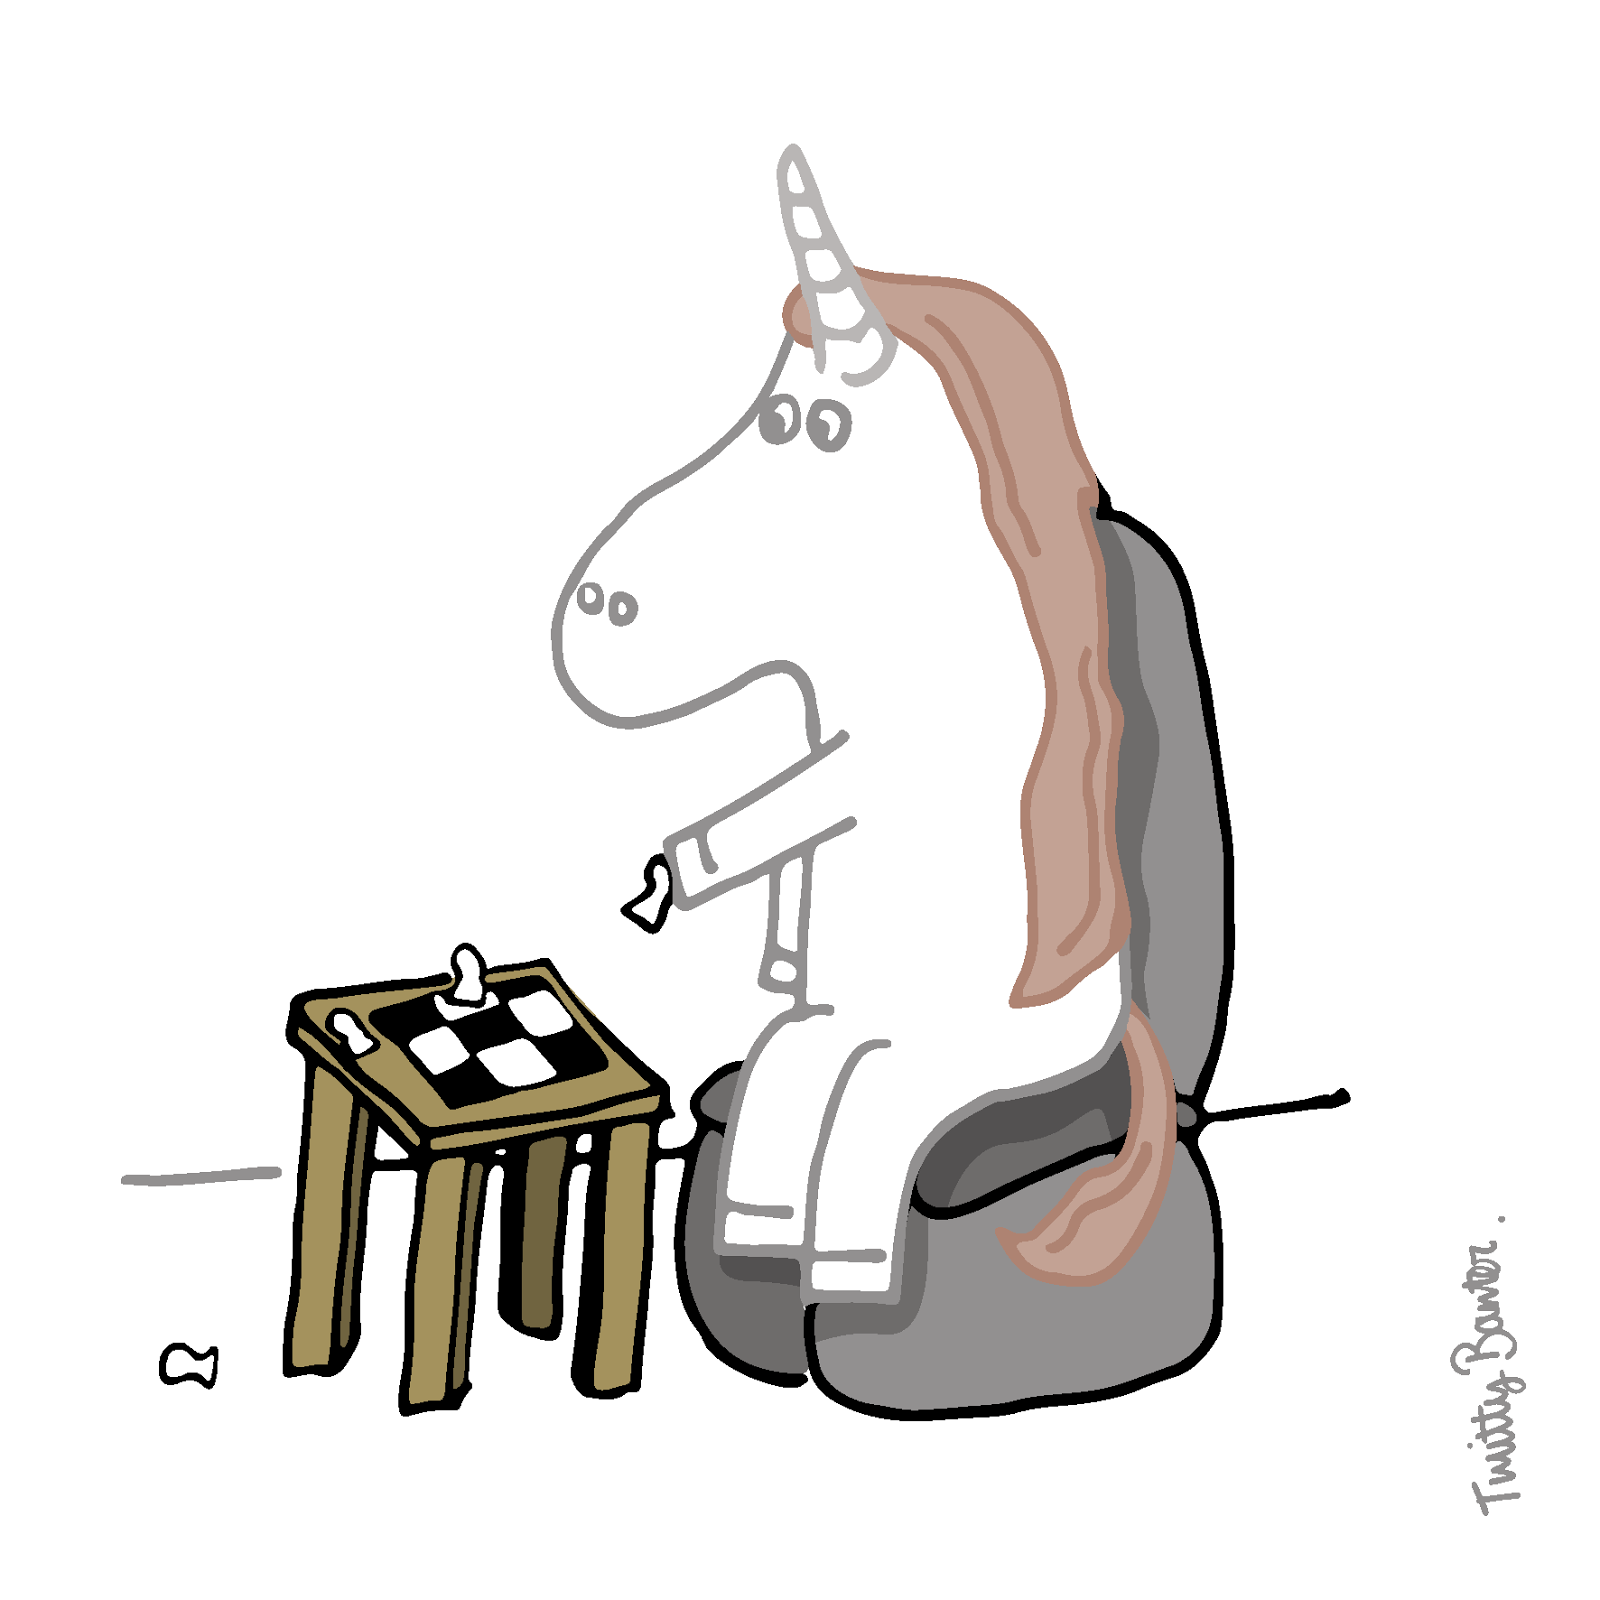 unicorn playing chess